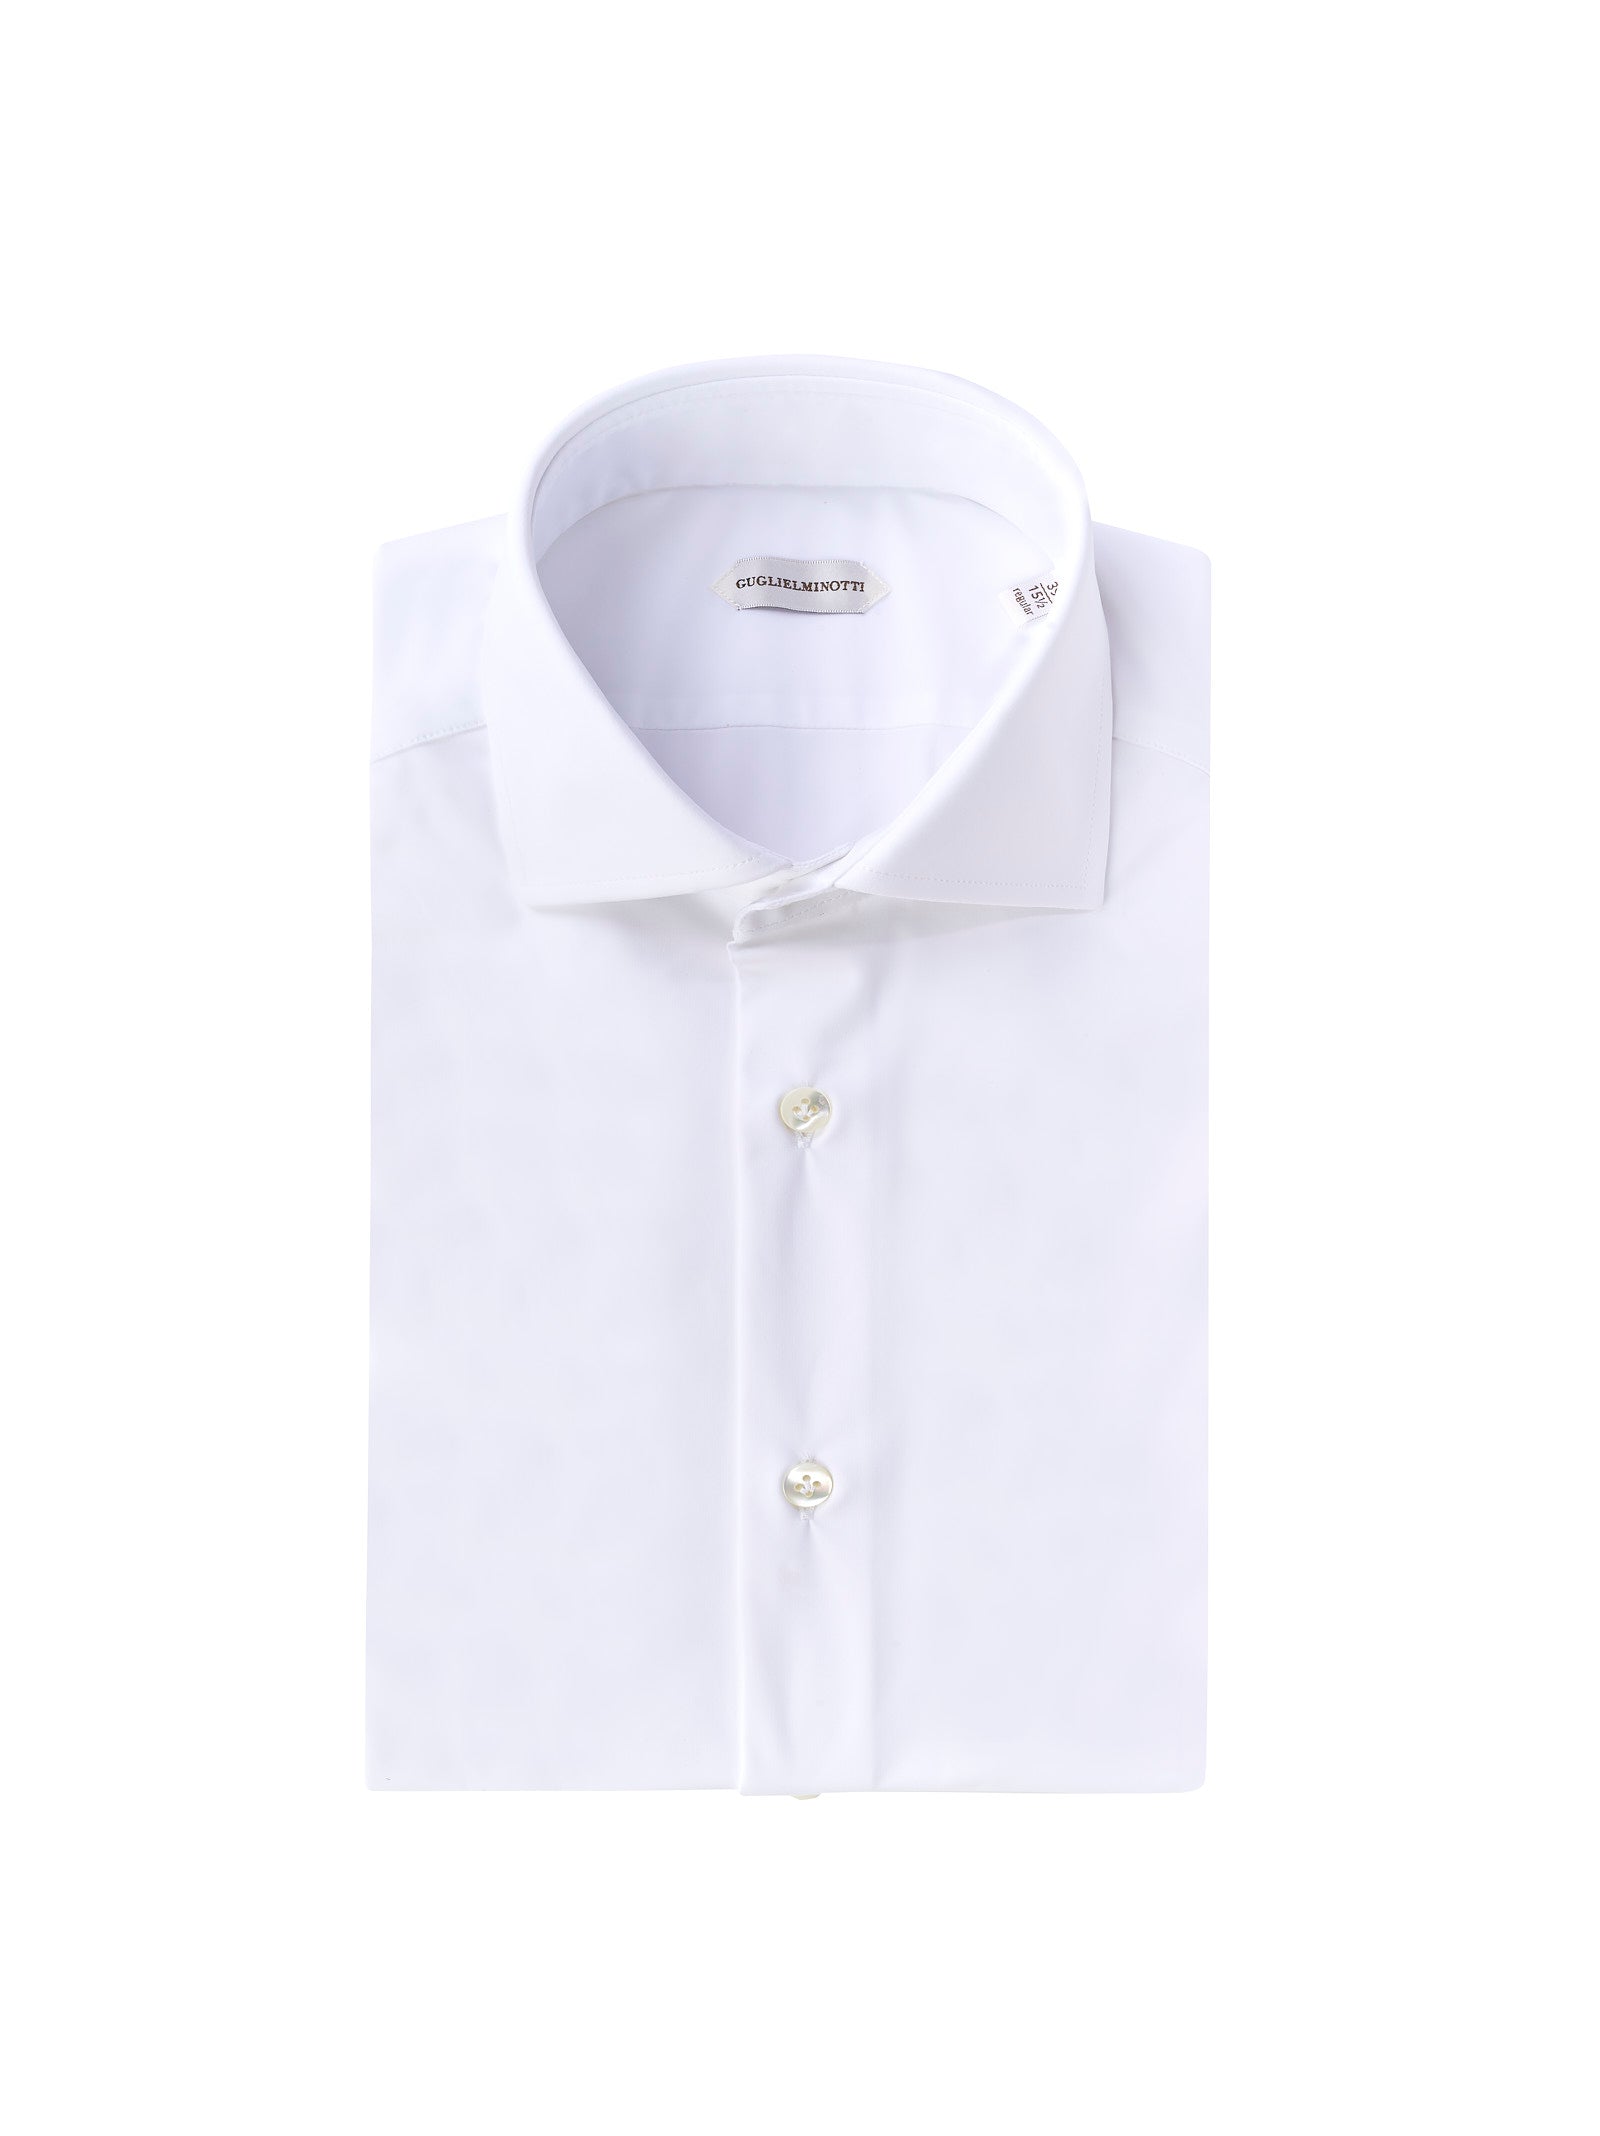 Camicia GUGLIELMINOTTI Regular fit performante
Bianco